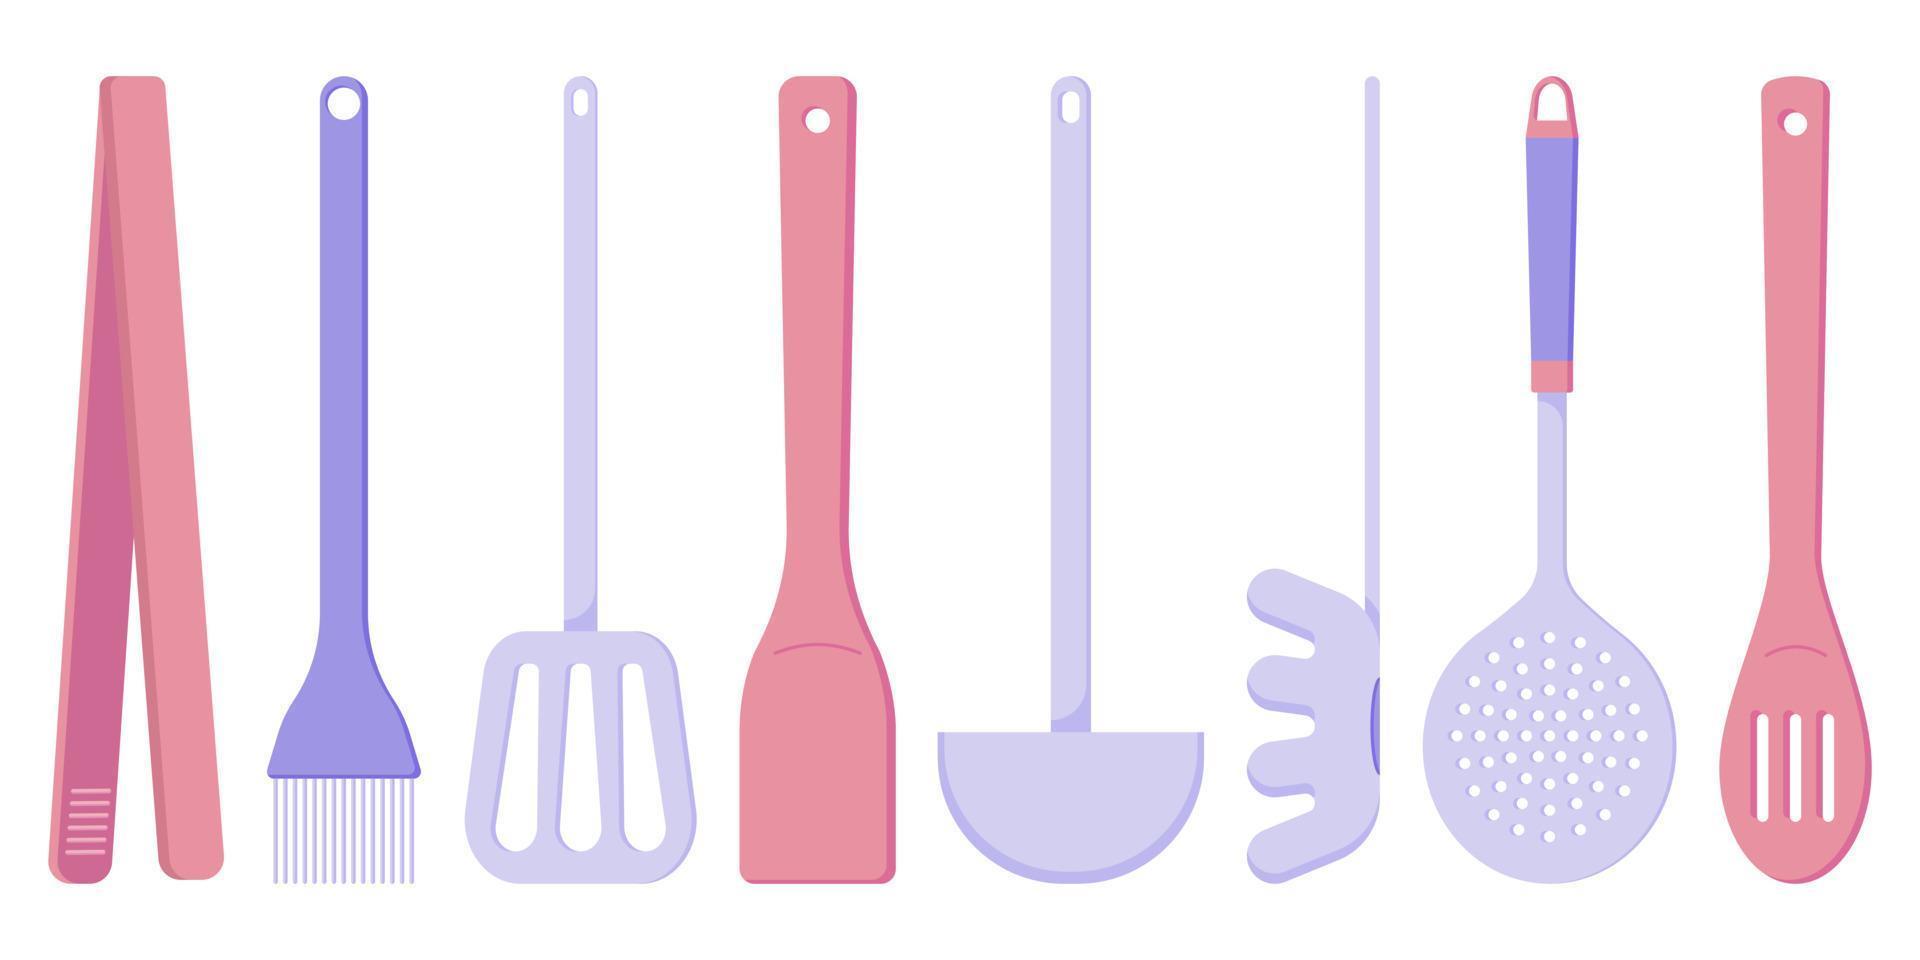 juego de electrodomésticos de cocina para cocinar, una cuchara, una espumadera, una espátula de madera, un cucharón, pinzas de cocina, un cepillo para asar, una cuchara para espaguetis, una ilustración de estilo plano vector